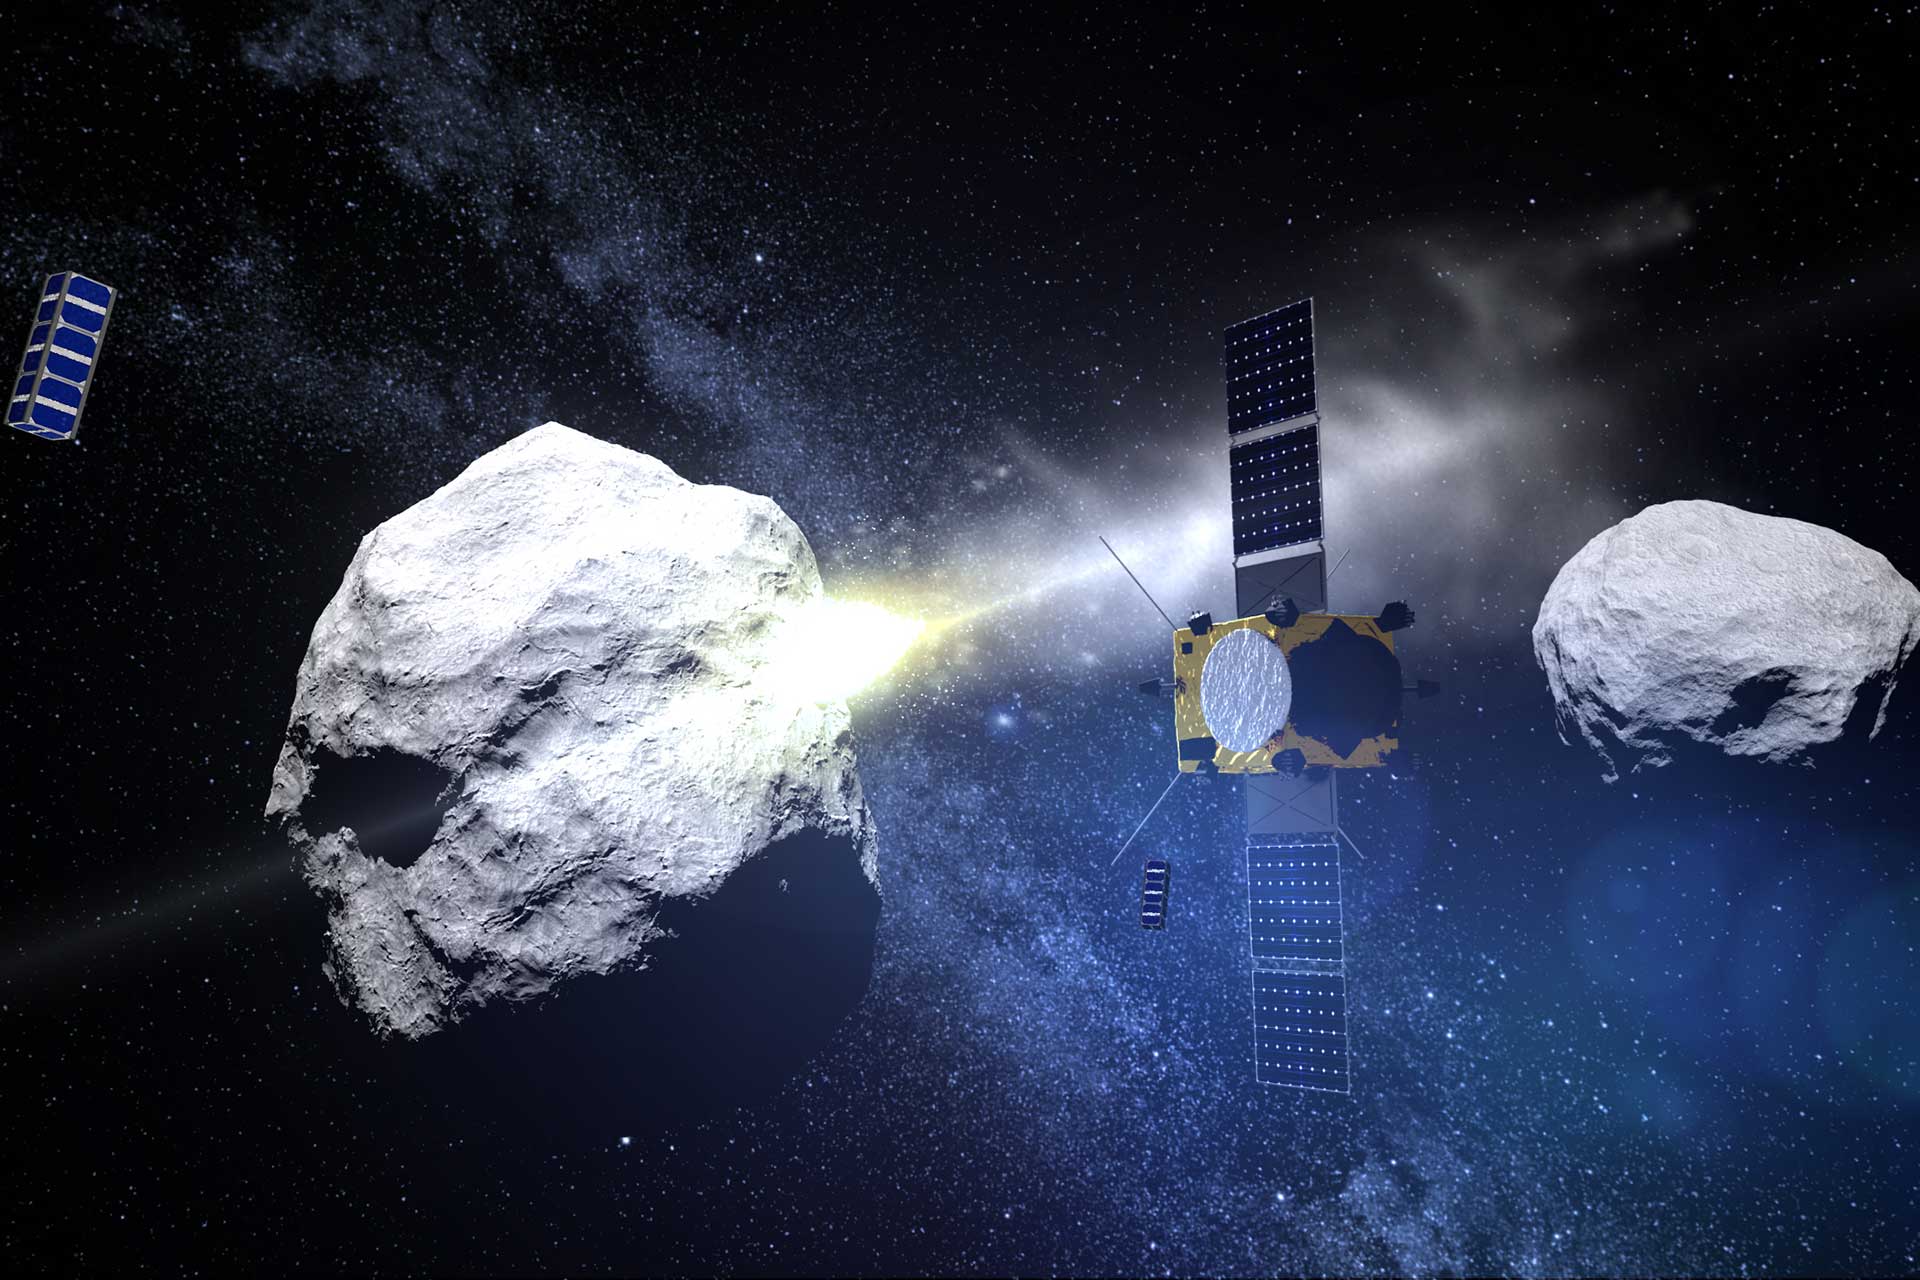 سیارکی که با فضاپیمای ناسا برخورد کرد، رفتاری غیرمنتظره دارد